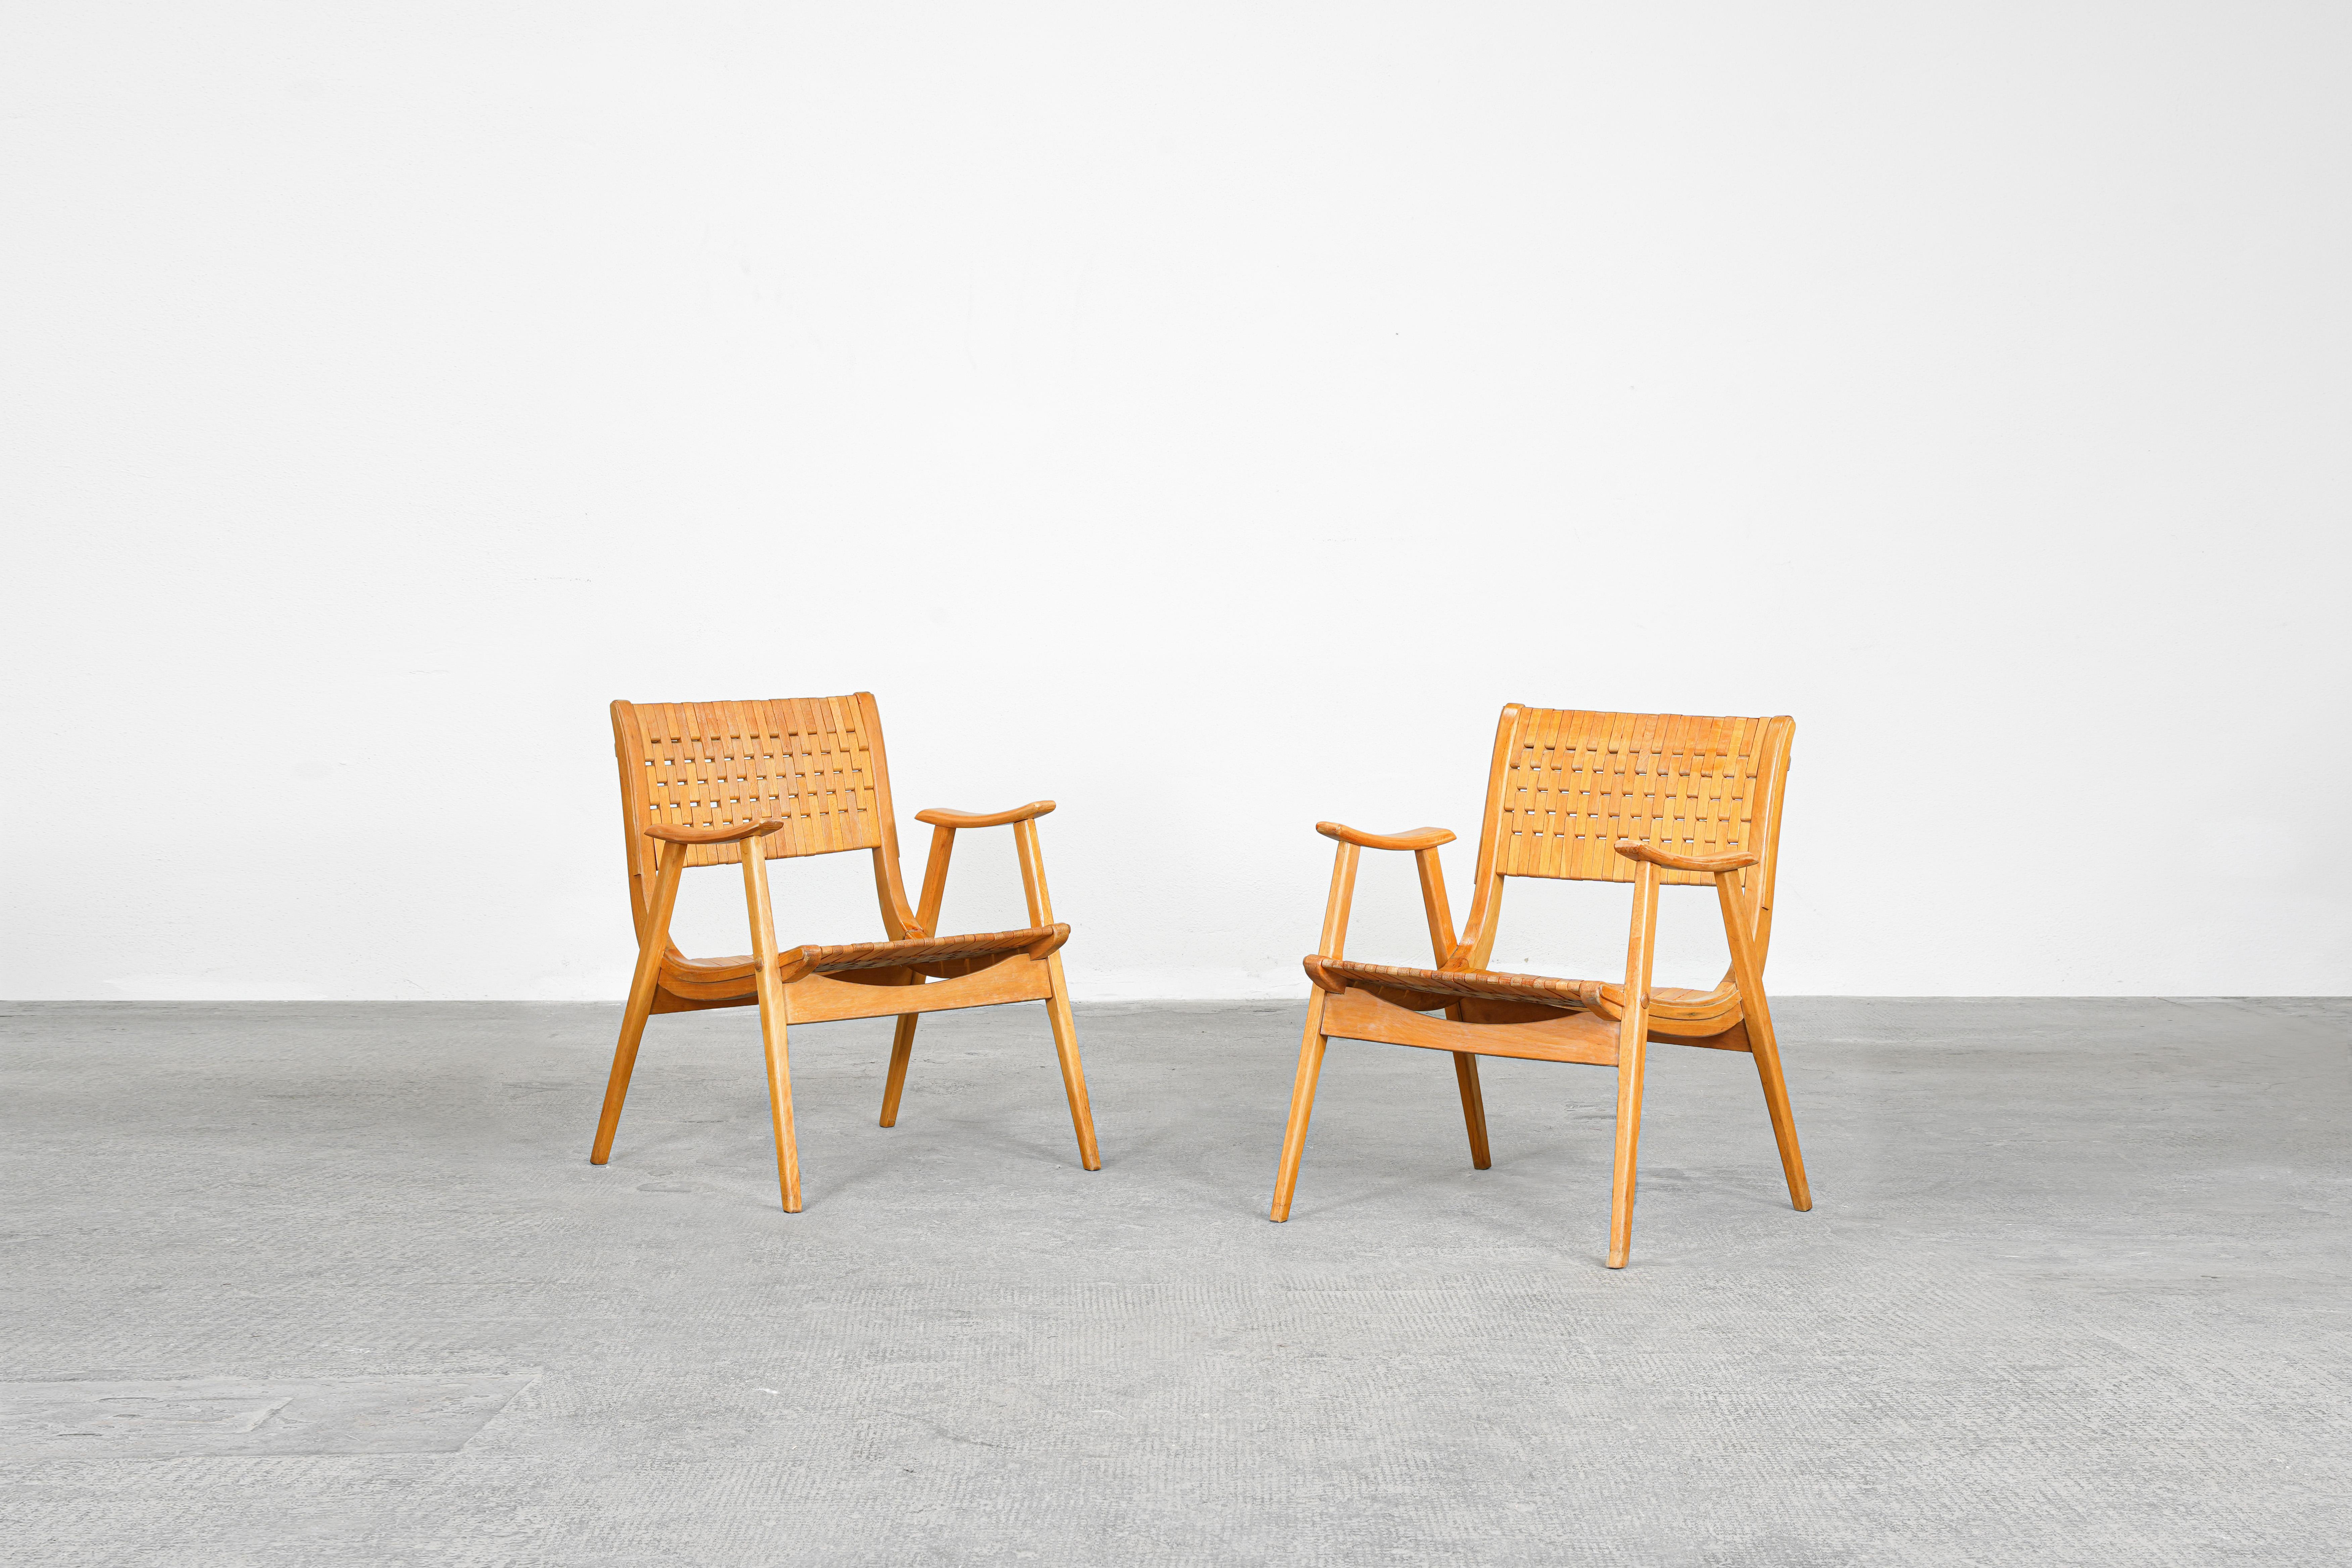 Paire de fauteuils conçus par Erich Dieckmann et produits par Gelenka, Allemagne, années 1930

Cette paire de fauteuils allemands Bauhaus a été conçue par Erich Dieckmann dans les années 1930. Les chaises présentent des lignes fortes et claires. Les